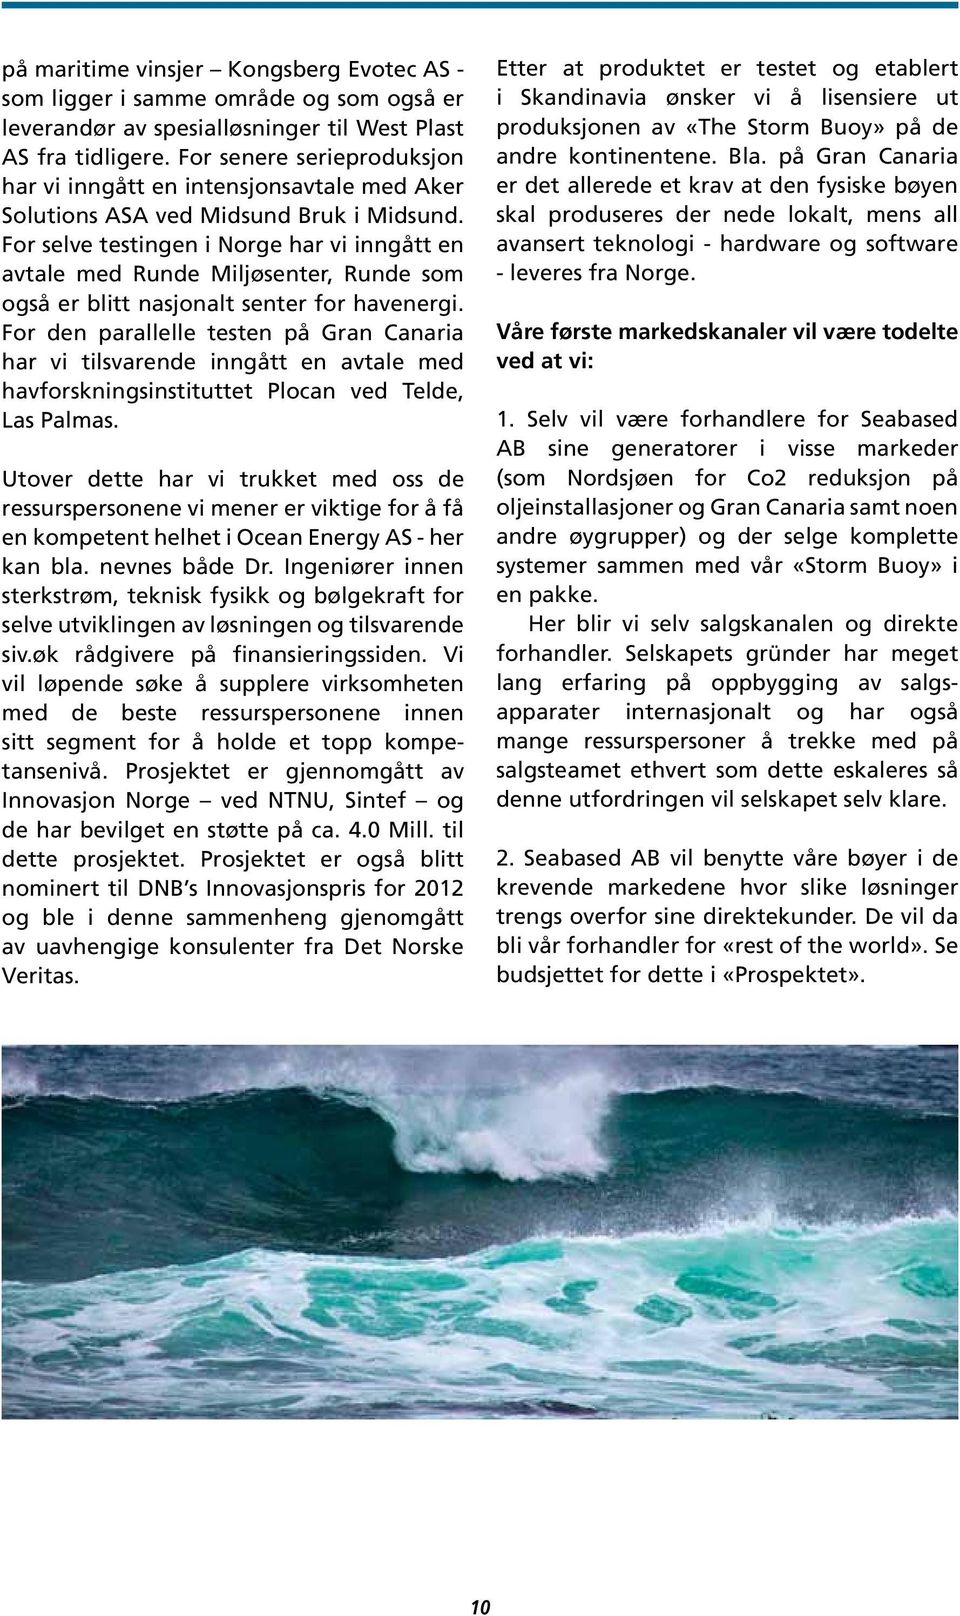 For selve testingen i Norge har vi inngått en avtale med Runde Miljøsenter, Runde som også er blitt nasjonalt senter for havenergi.